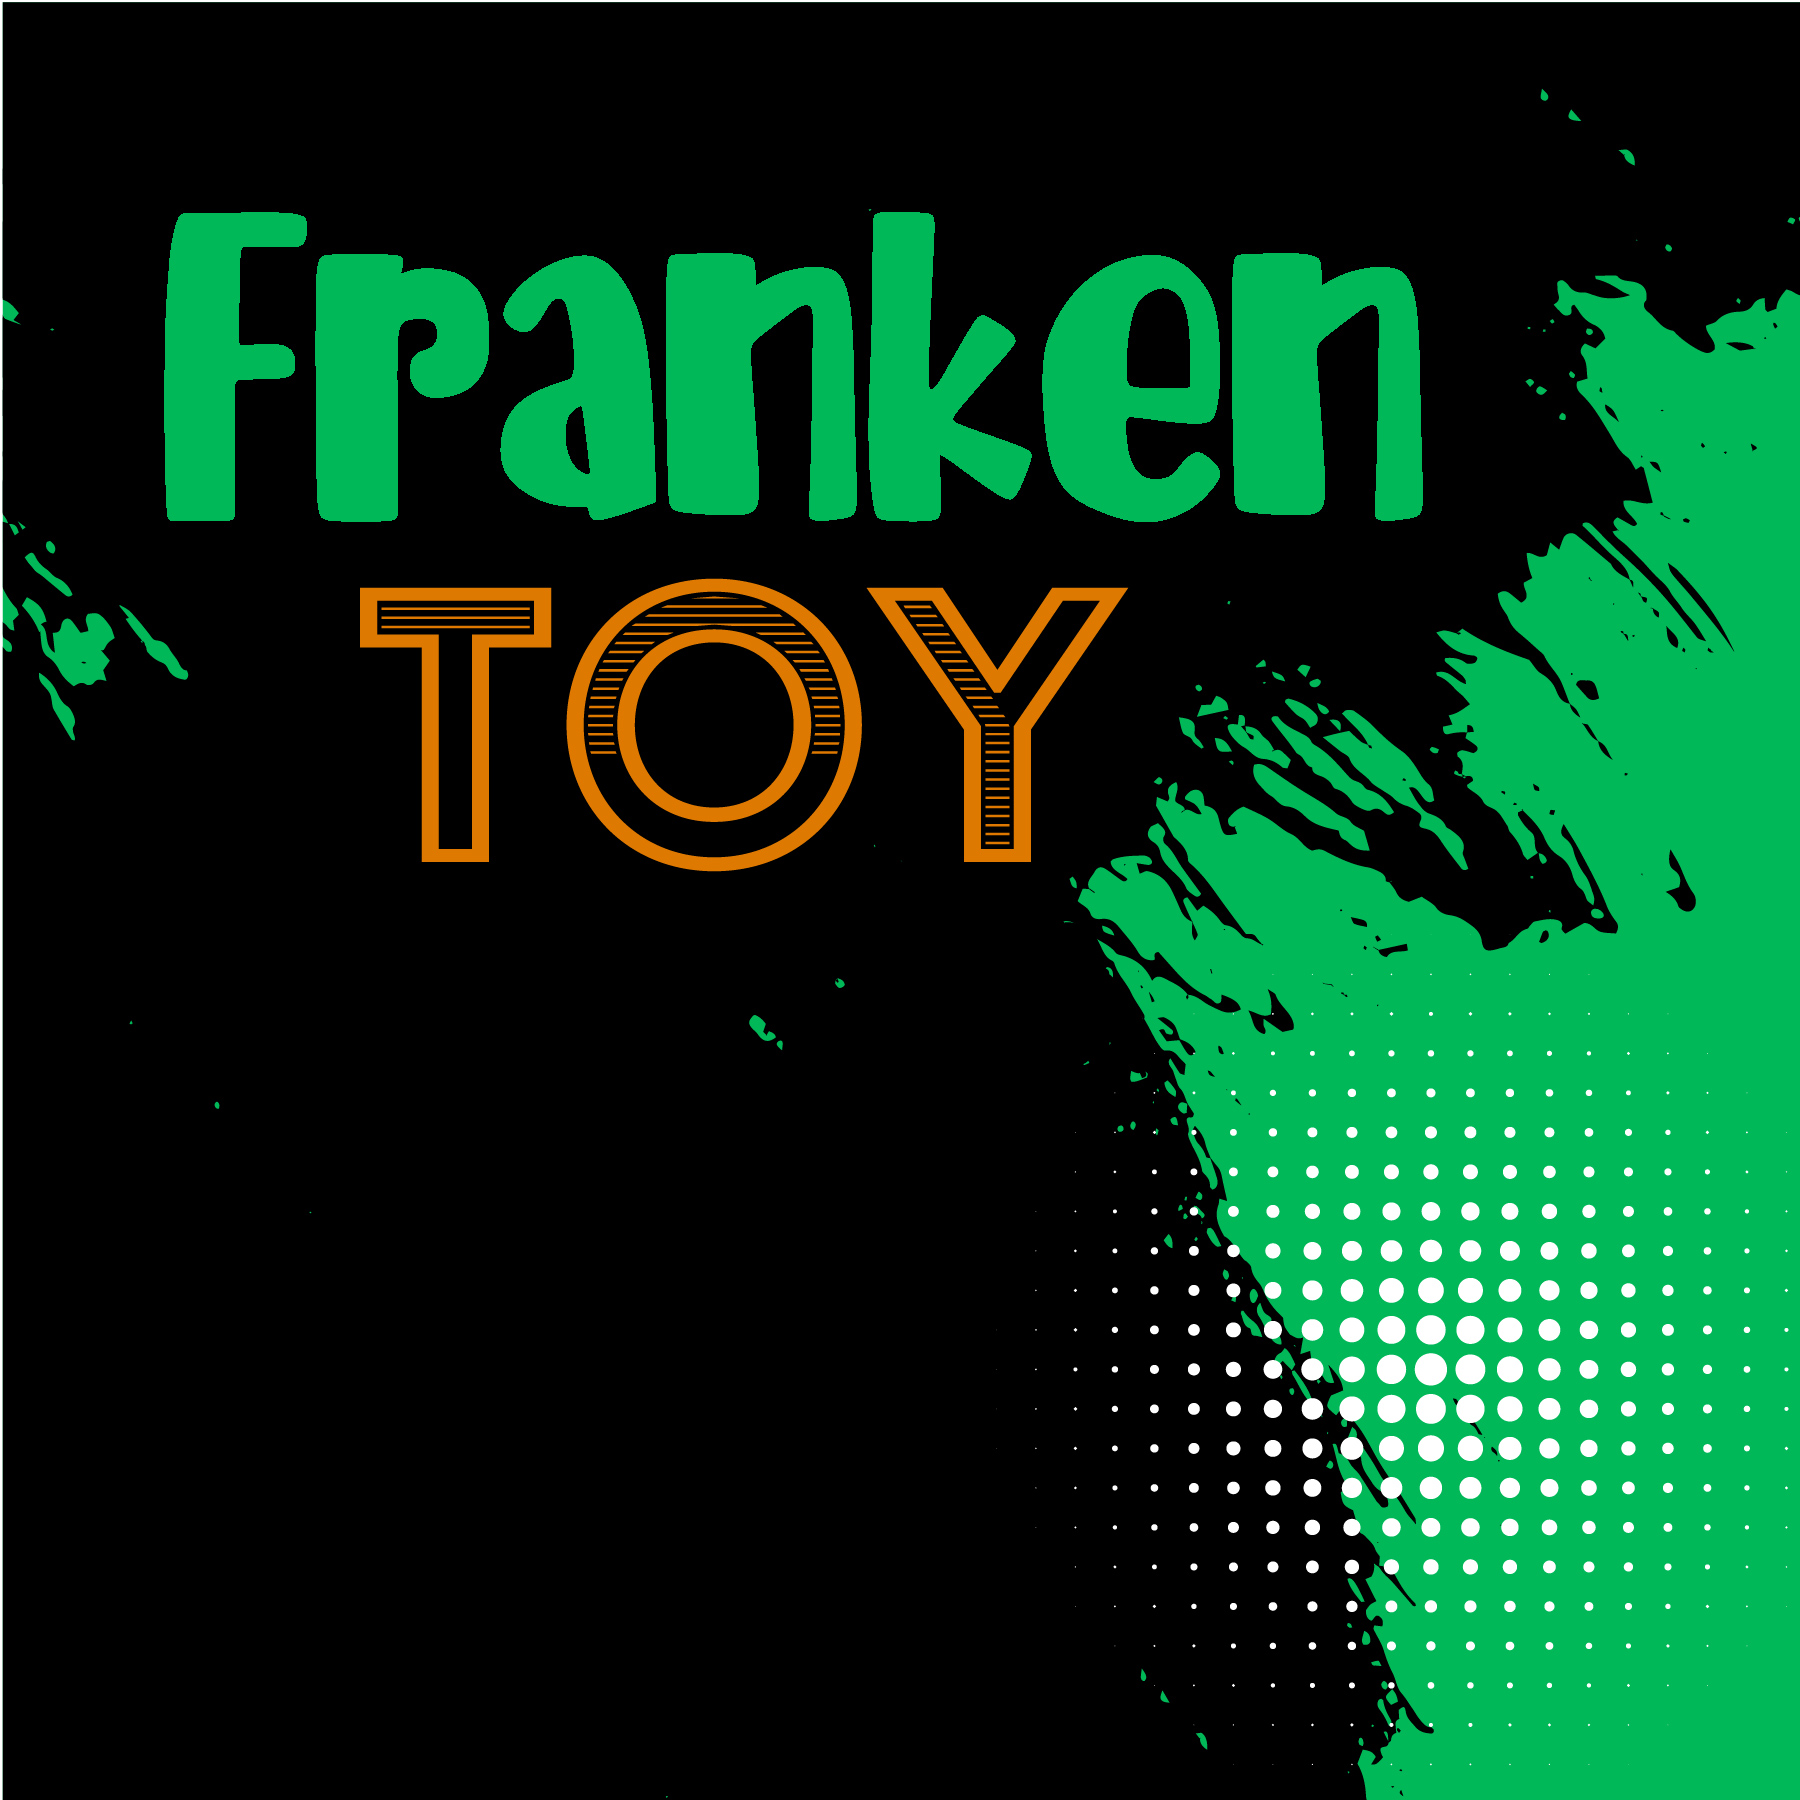 Franken Toy Graphic